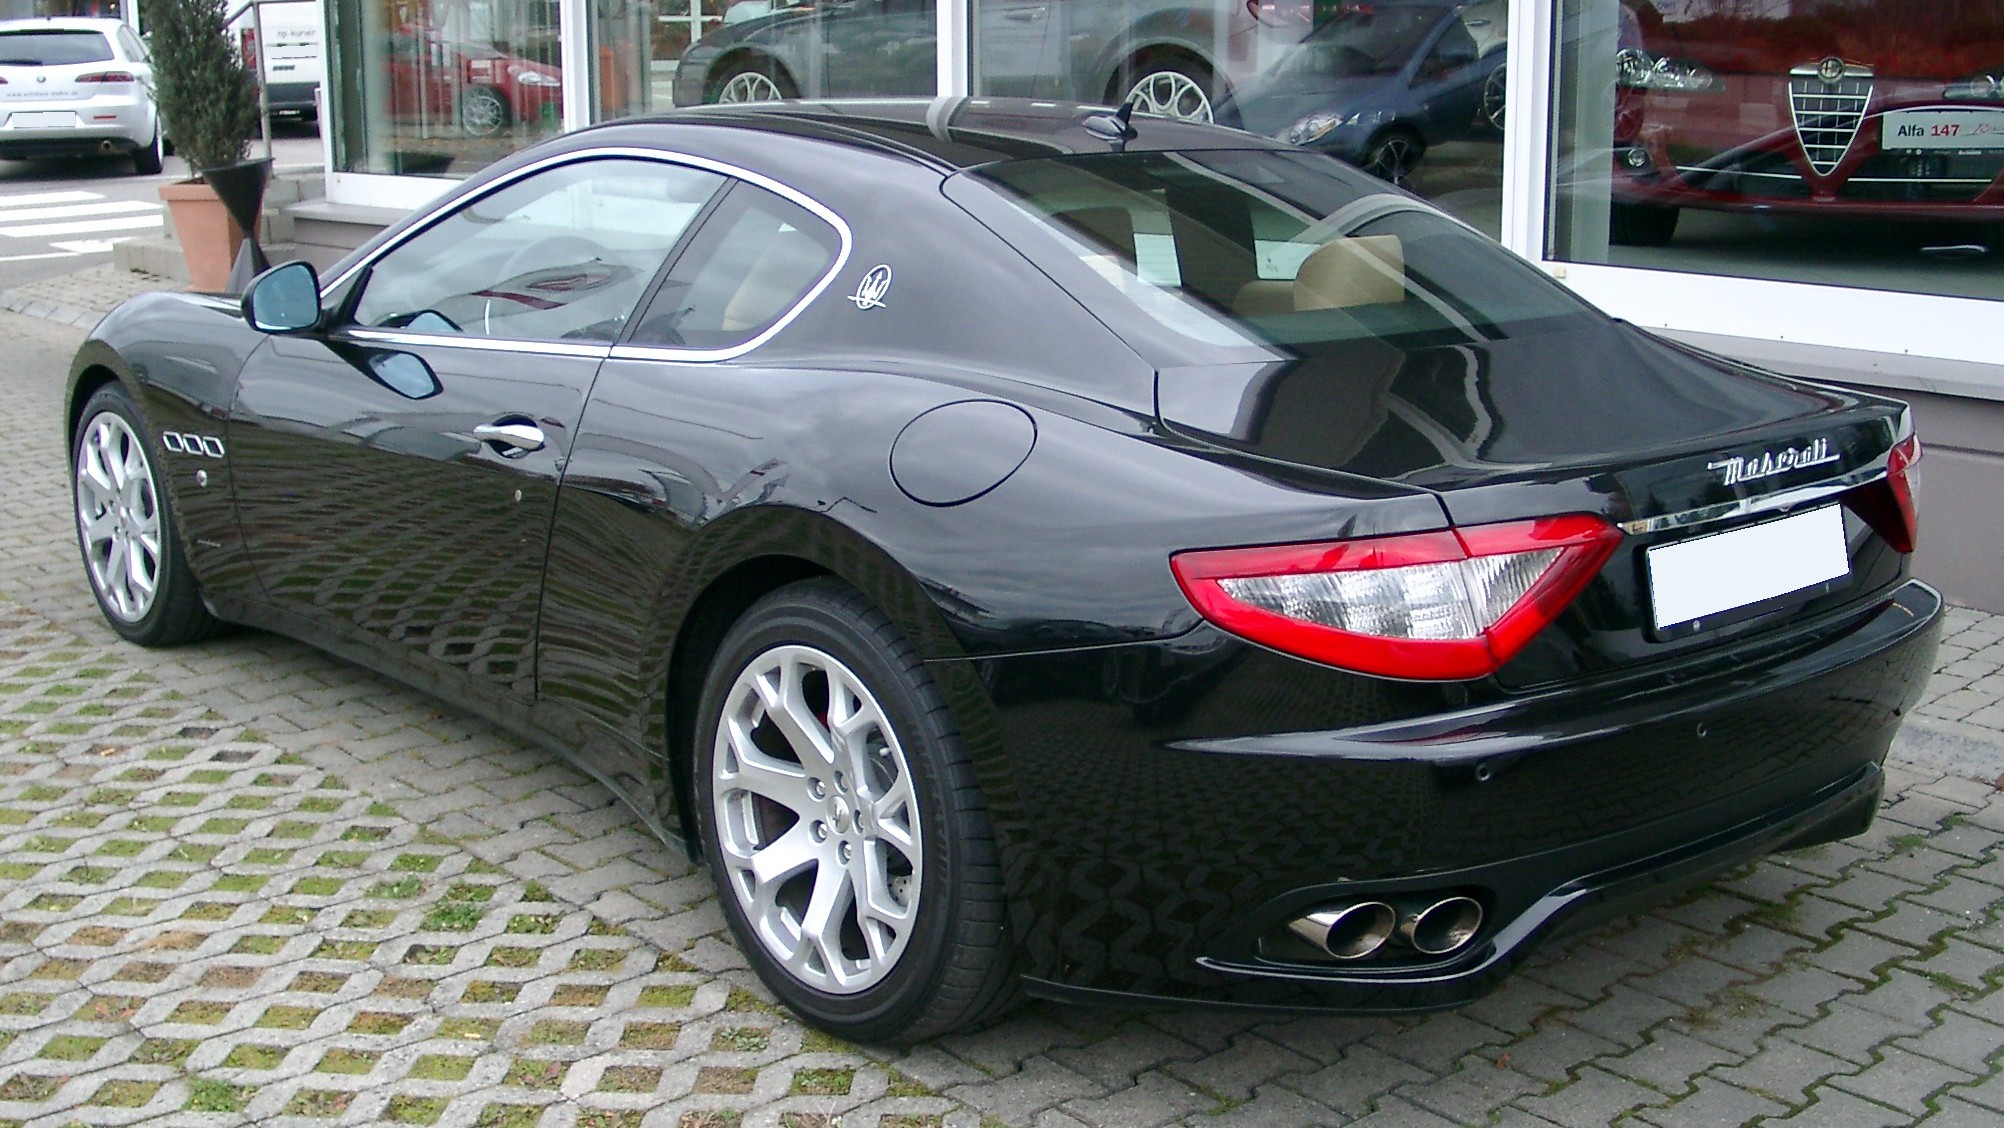 Maserati+gt+white